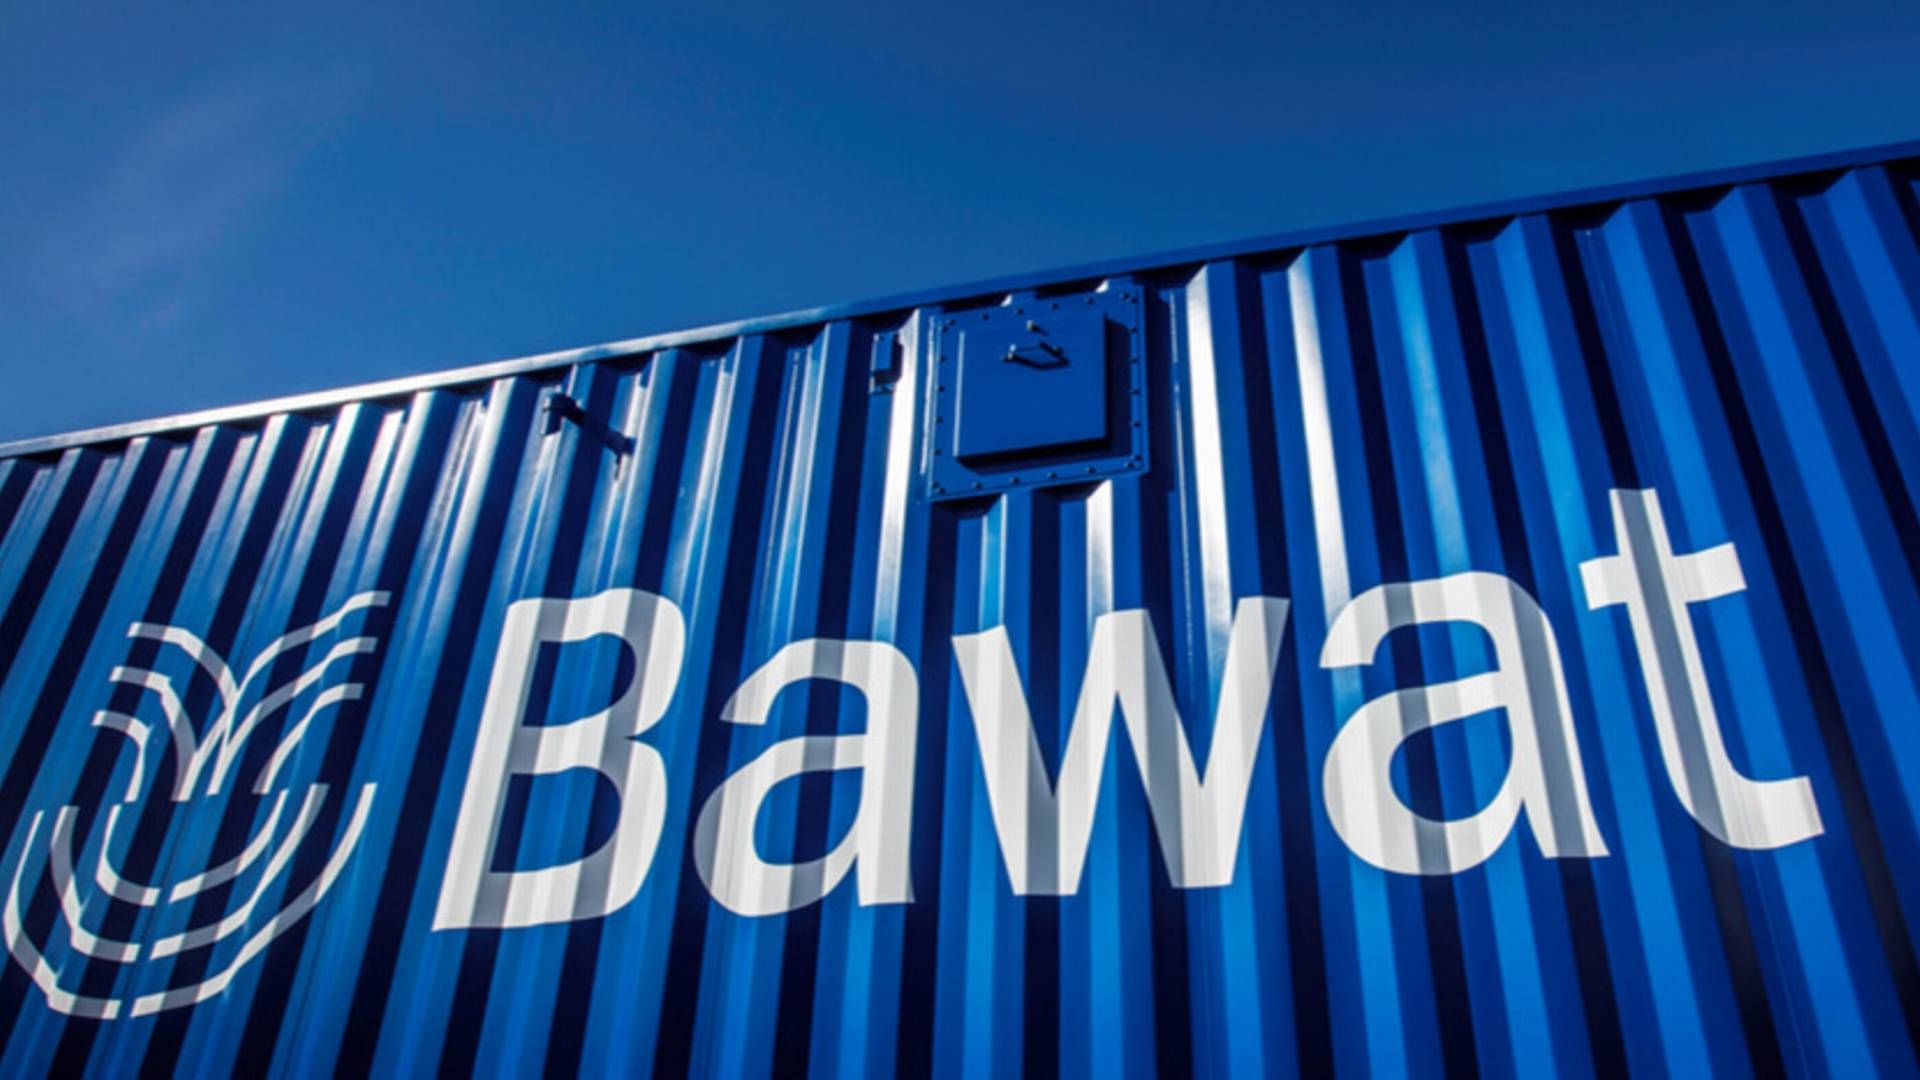 Bawat trådte 28. marts 2022 ind på First North Premier i Sverige. | Foto: Bawat